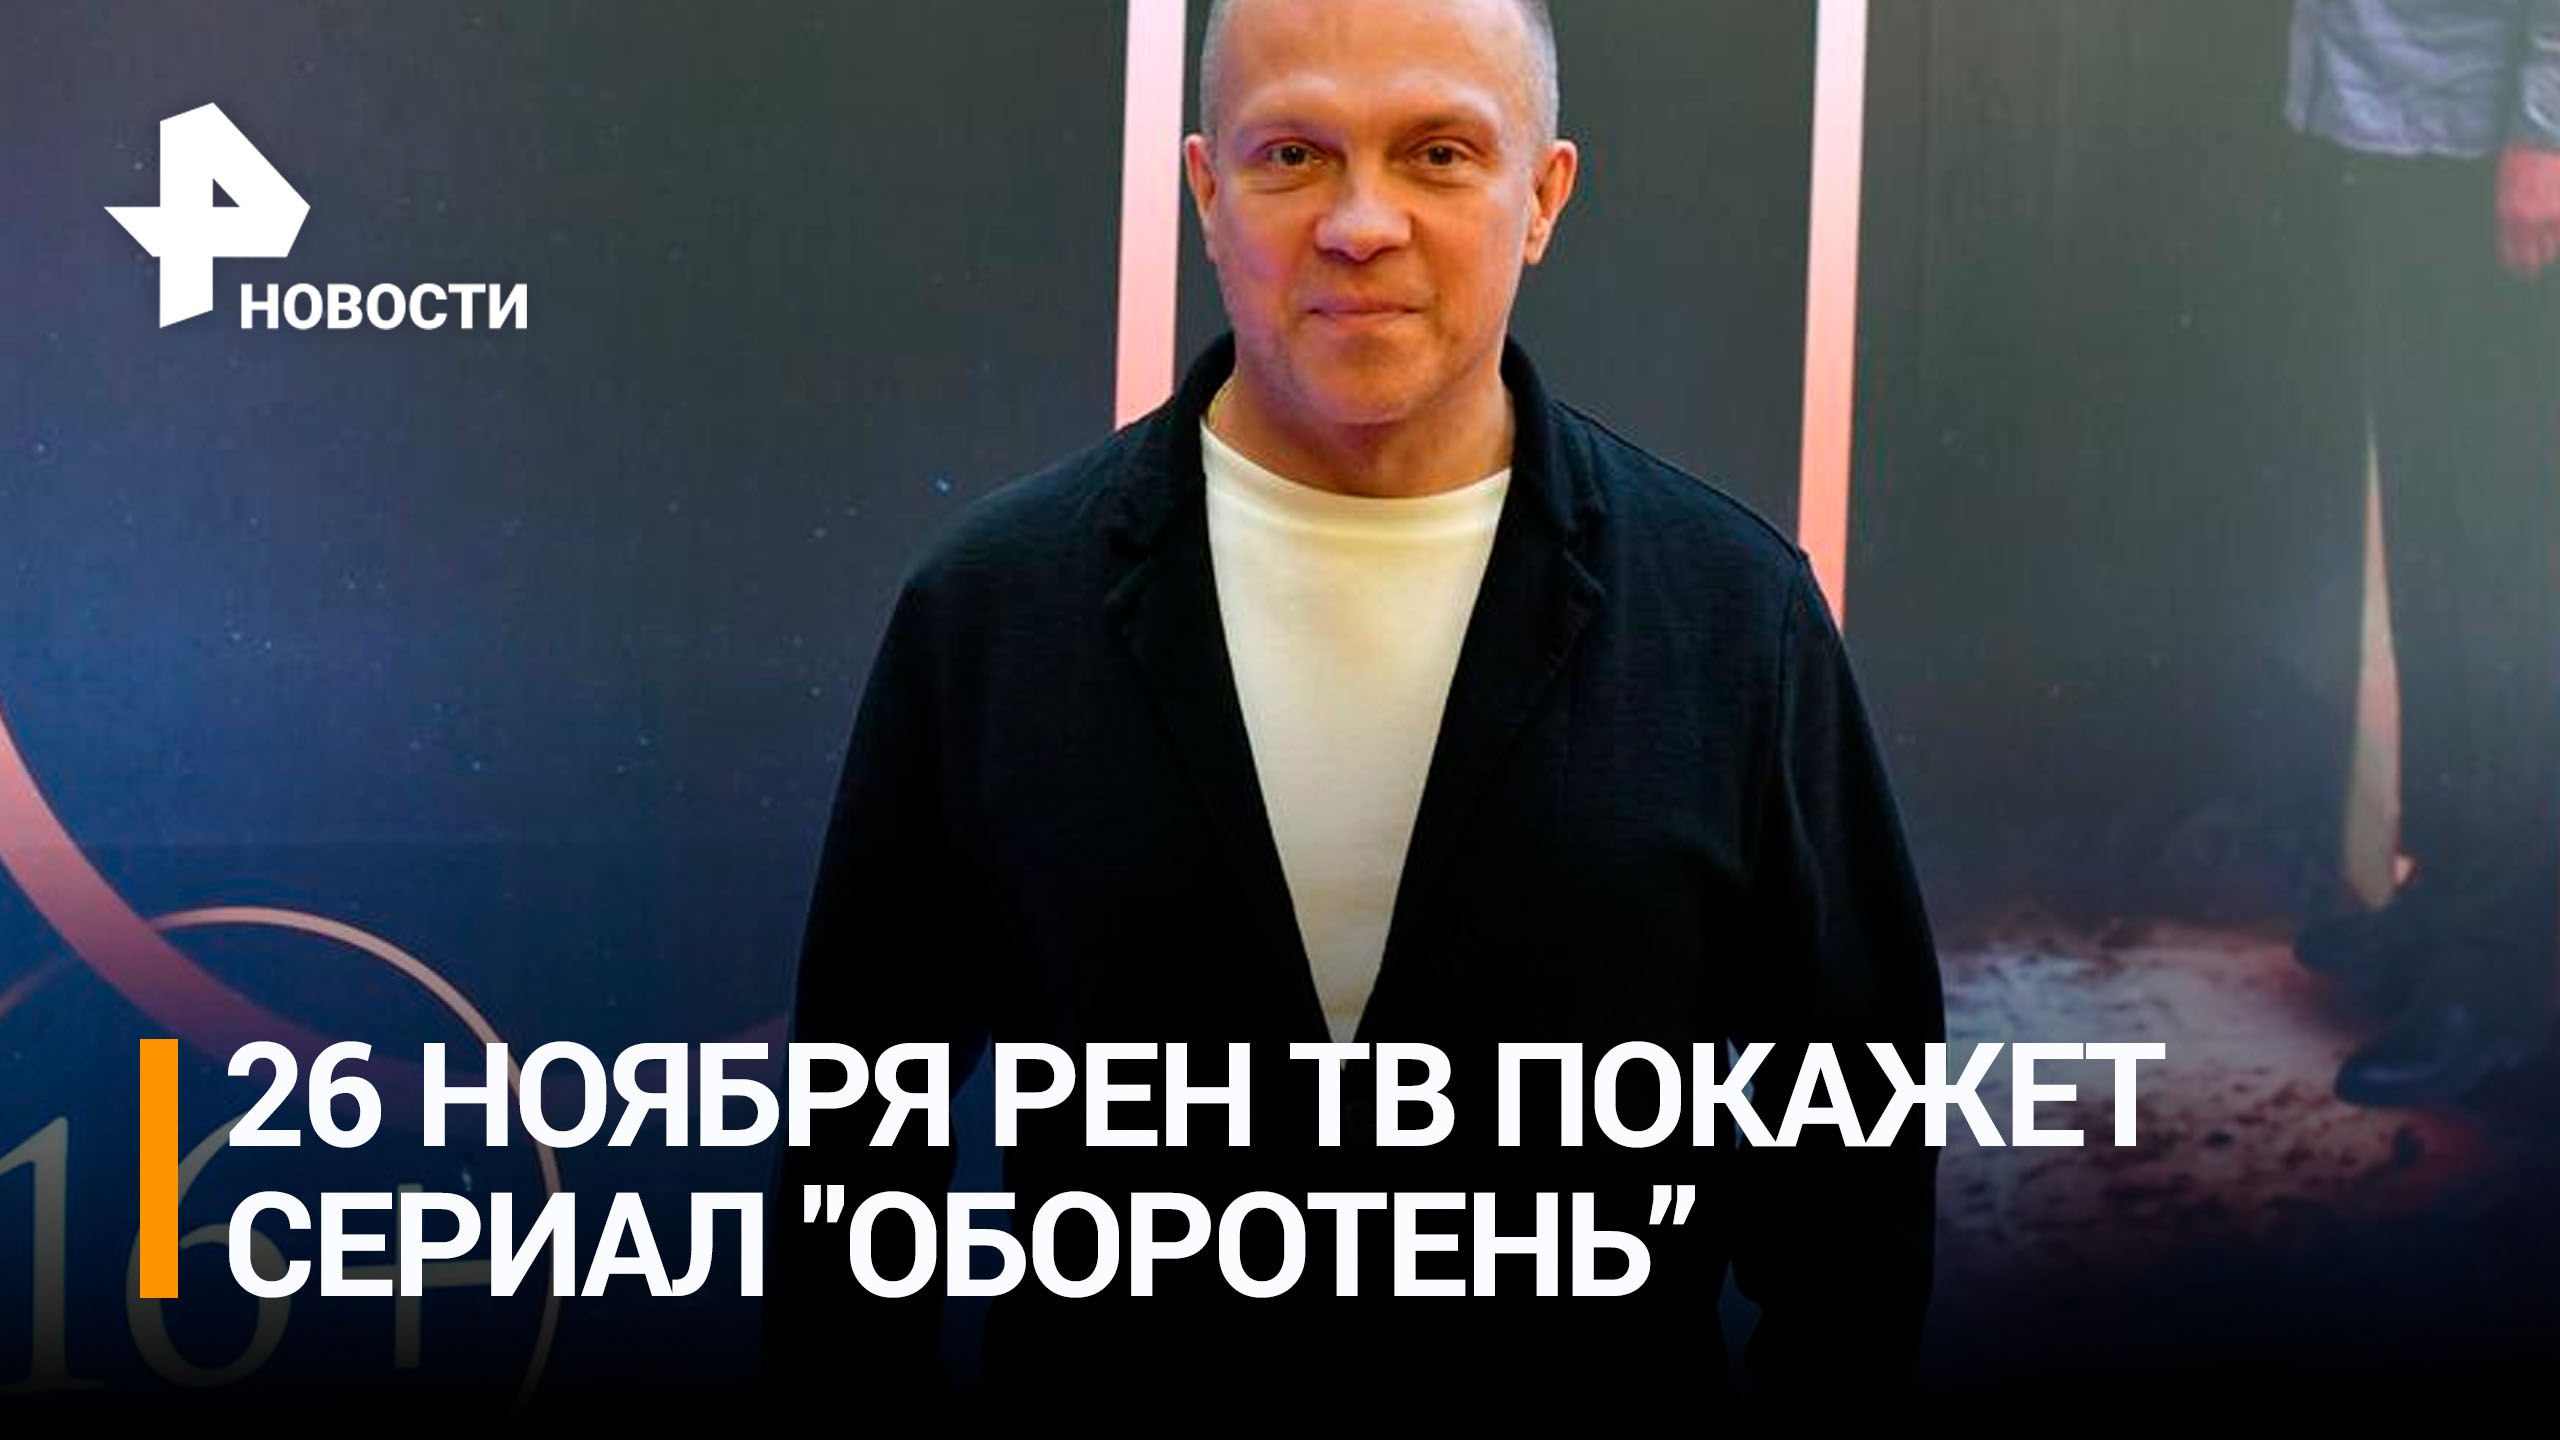 DJ Грув рассказал, как создавал саундтрек к сериалу "Оборотень" / РЕН Новости